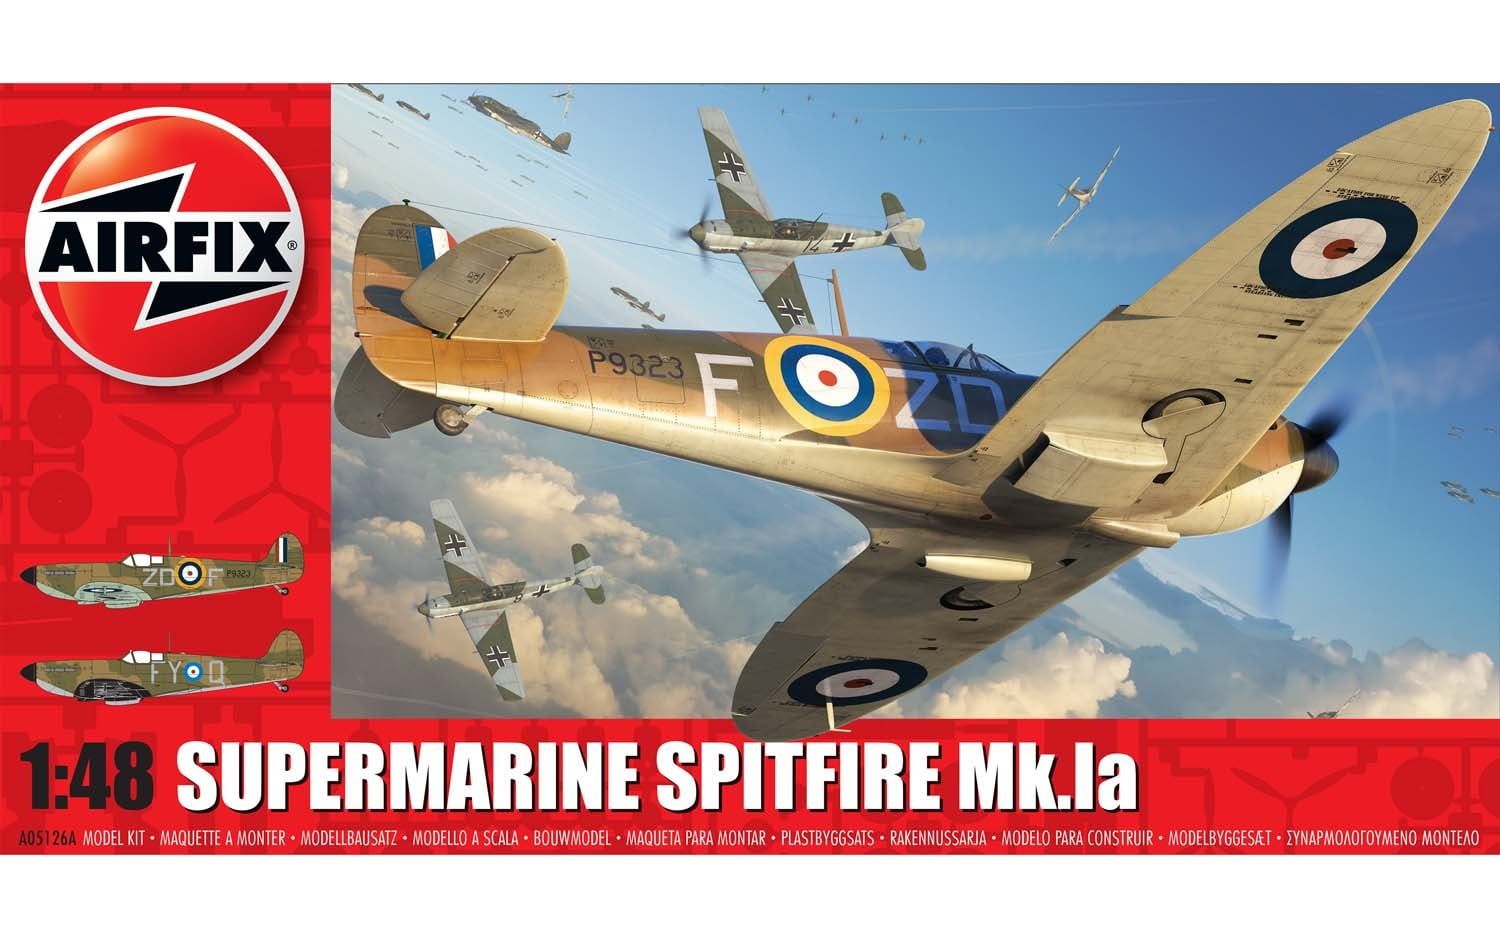 Airfix Supermarine Spitfire Mk.1a